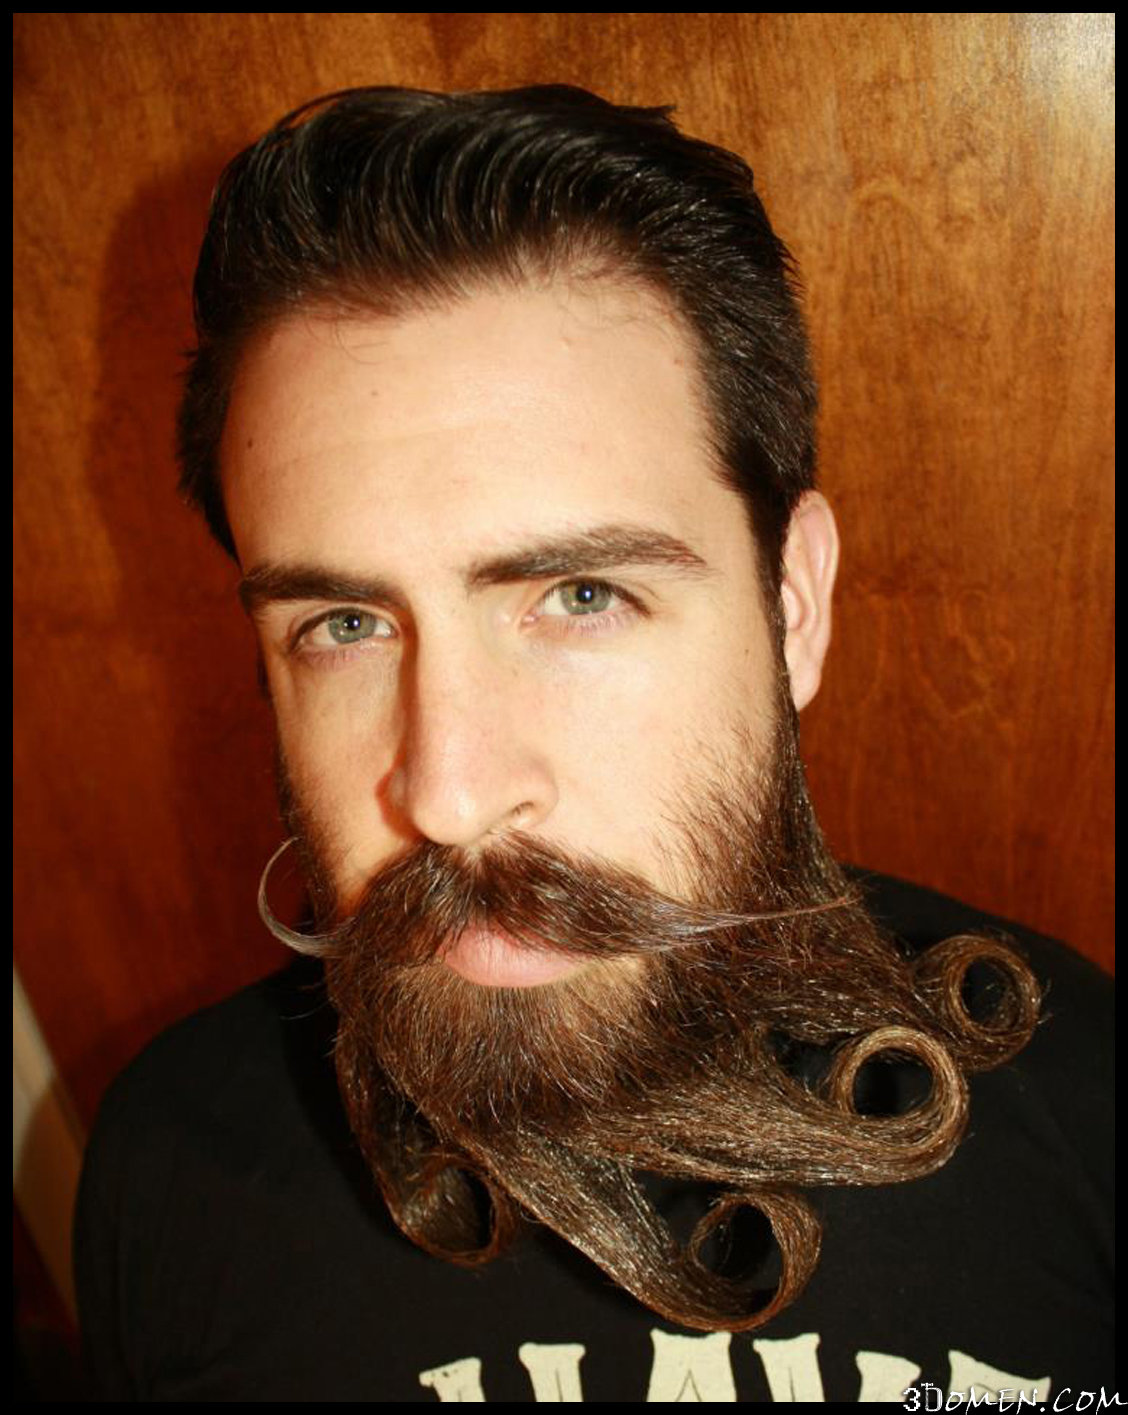 Знакомьтесь, ваш новый образ: борода бальбо